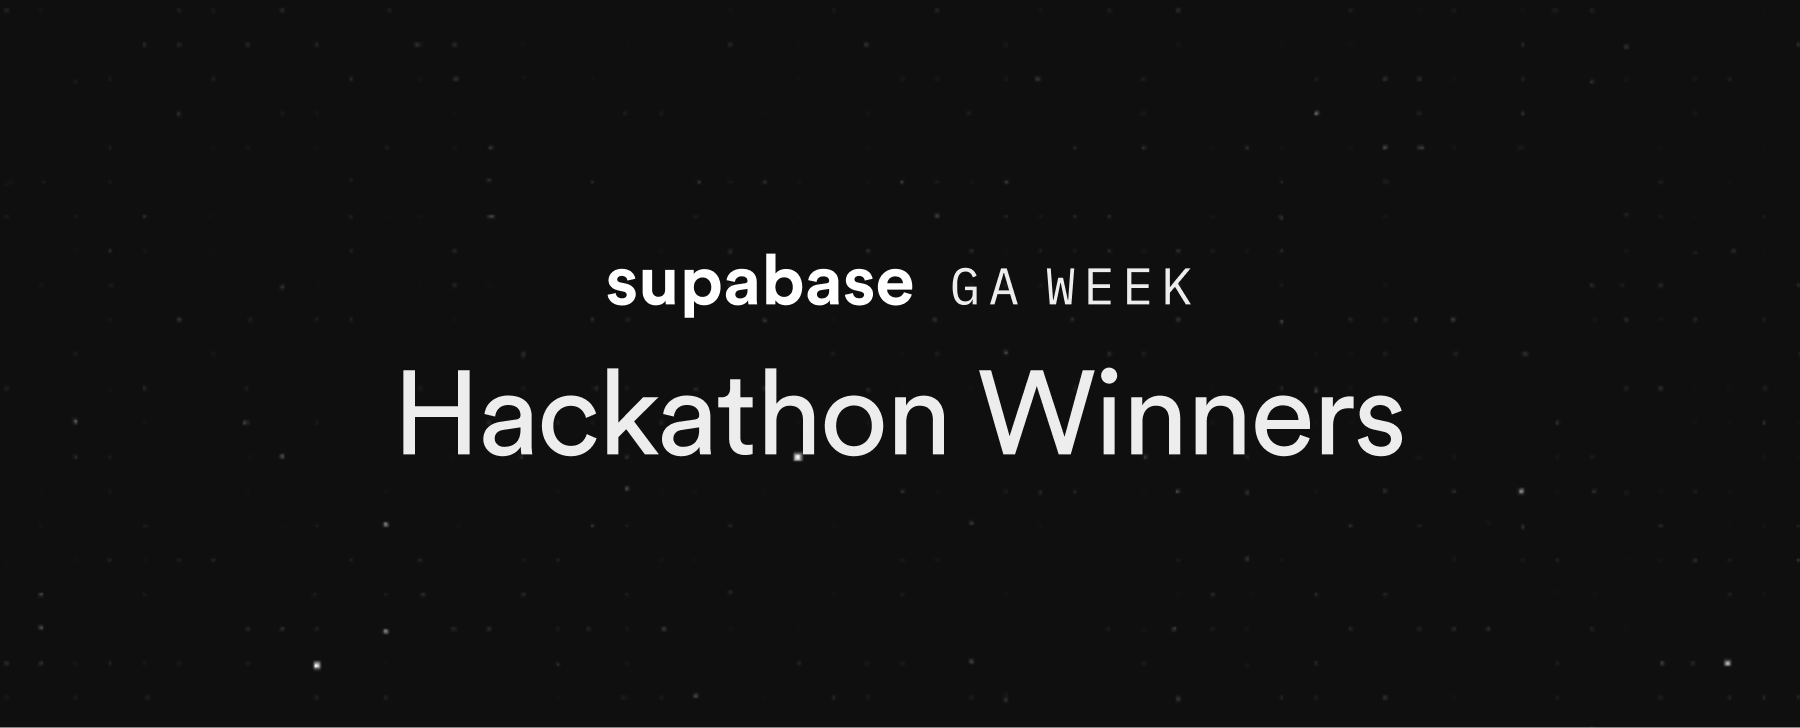 GA Week Hackathon Winners